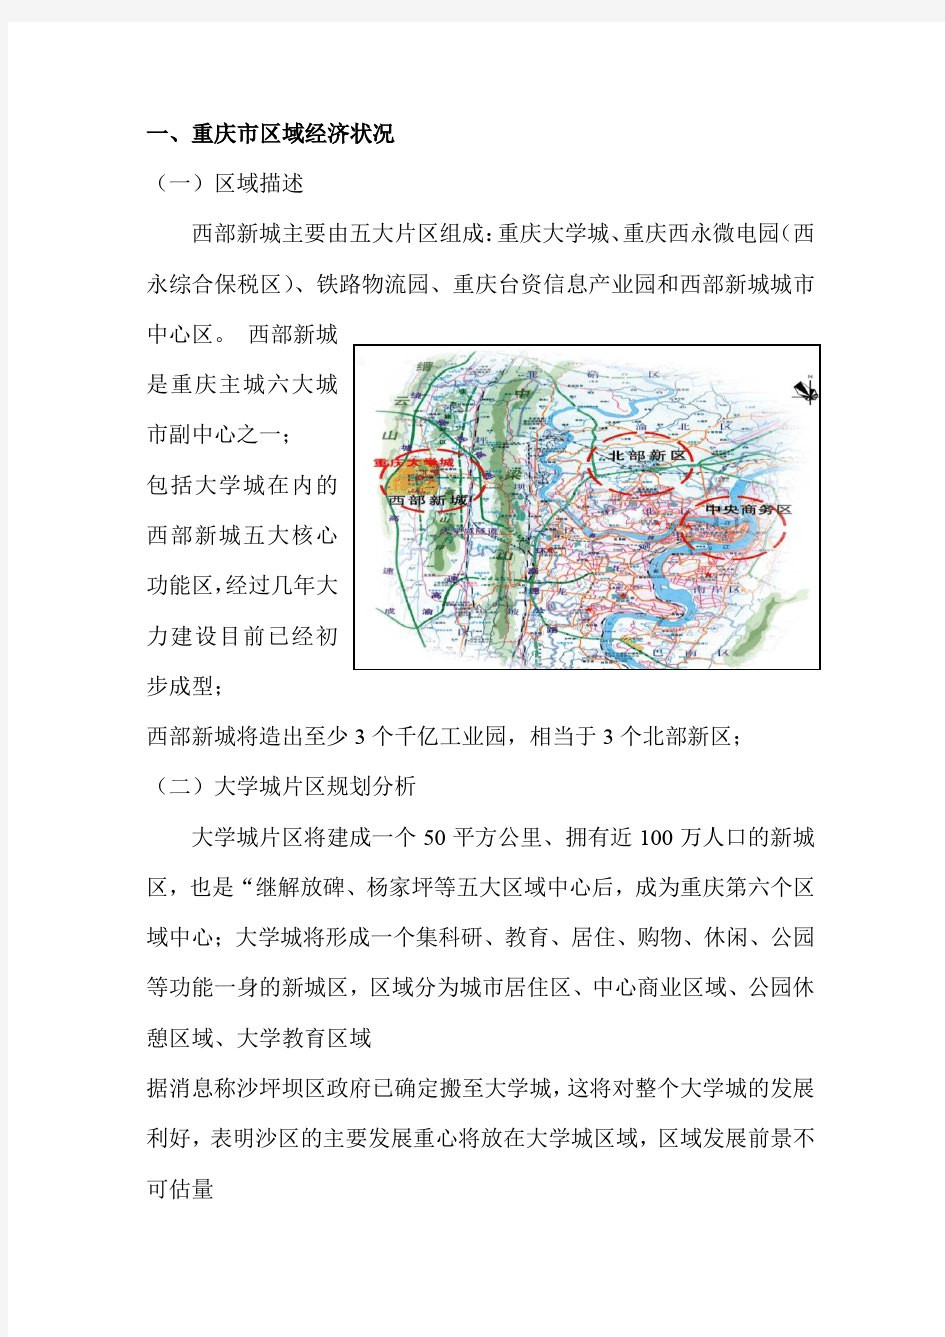 重庆市区域经济状况